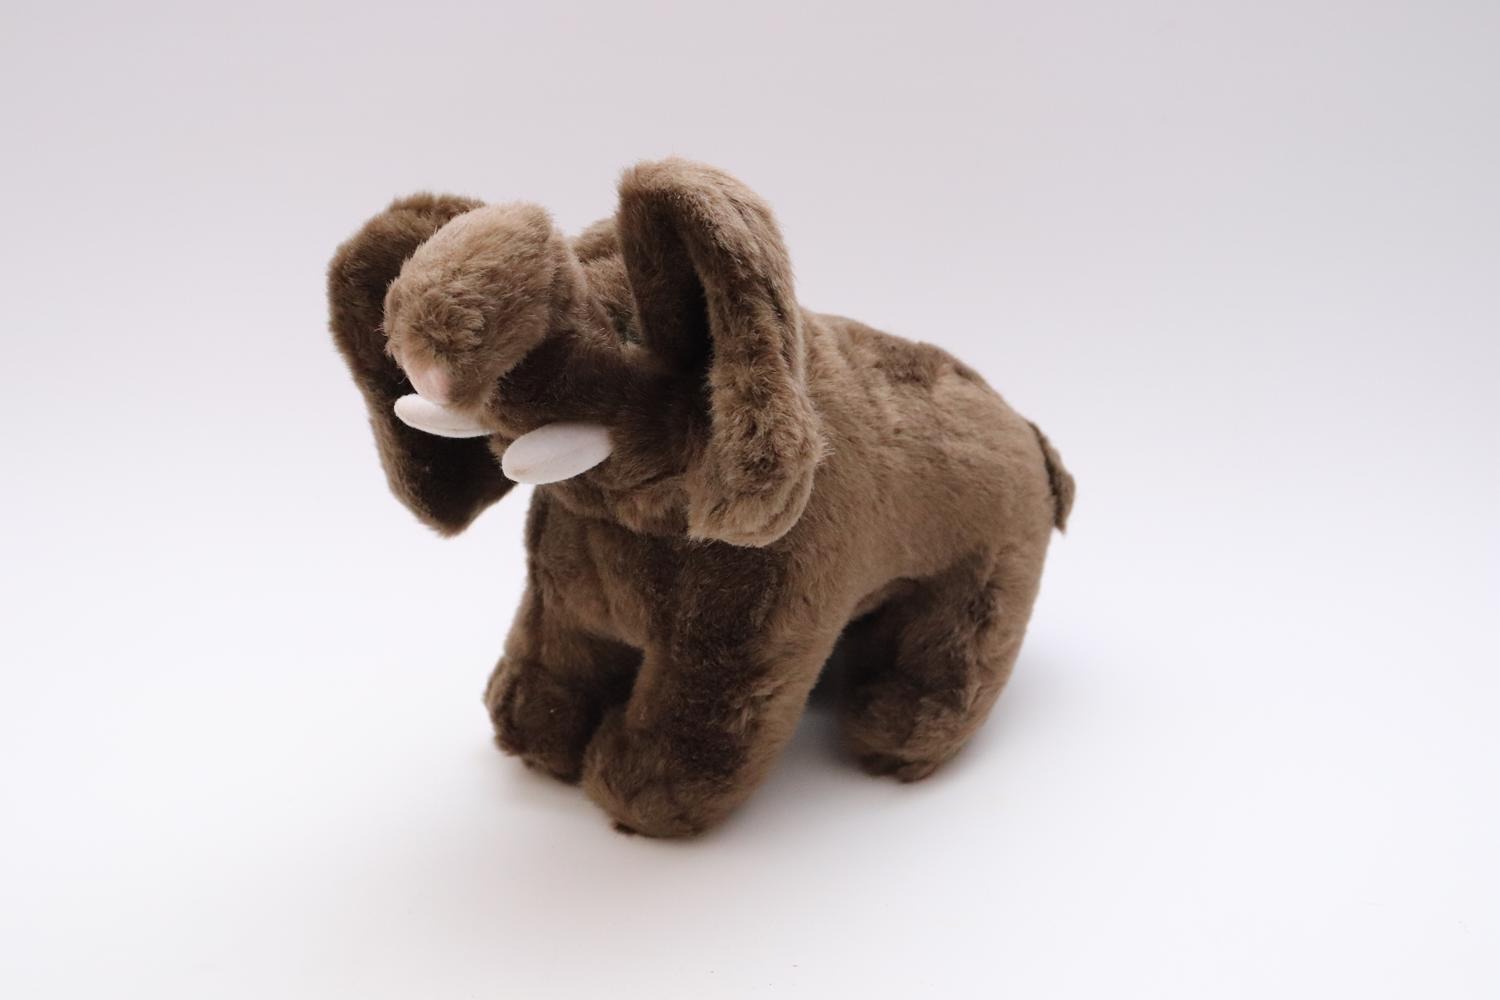 Ikea knuffel olifant (Afrika collectie) Knuffels / Handpoppen